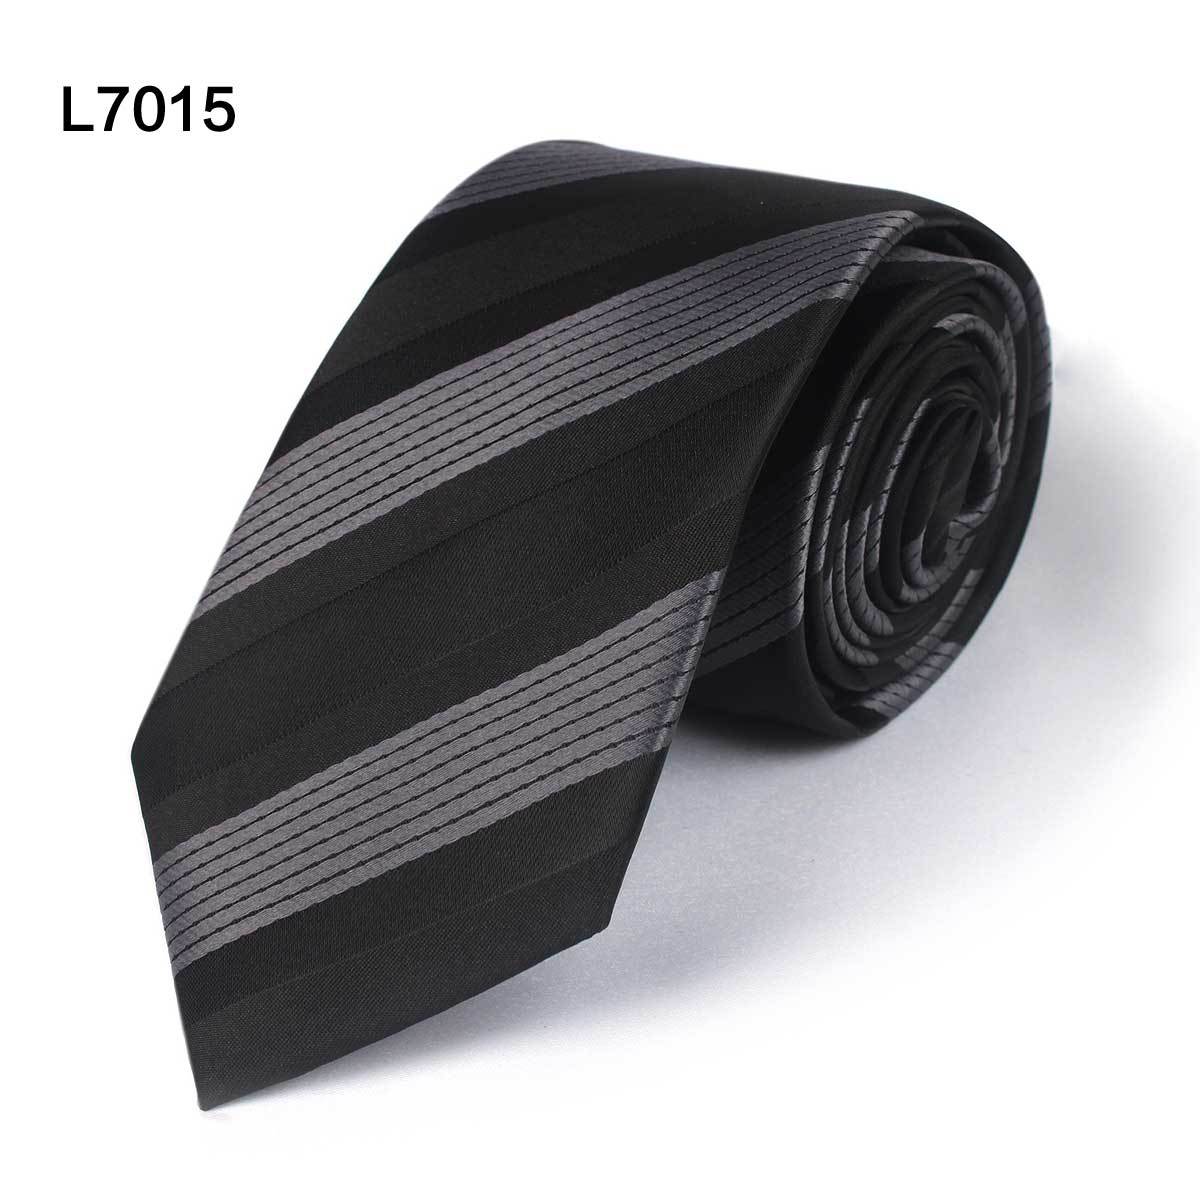 Stripe Necktie